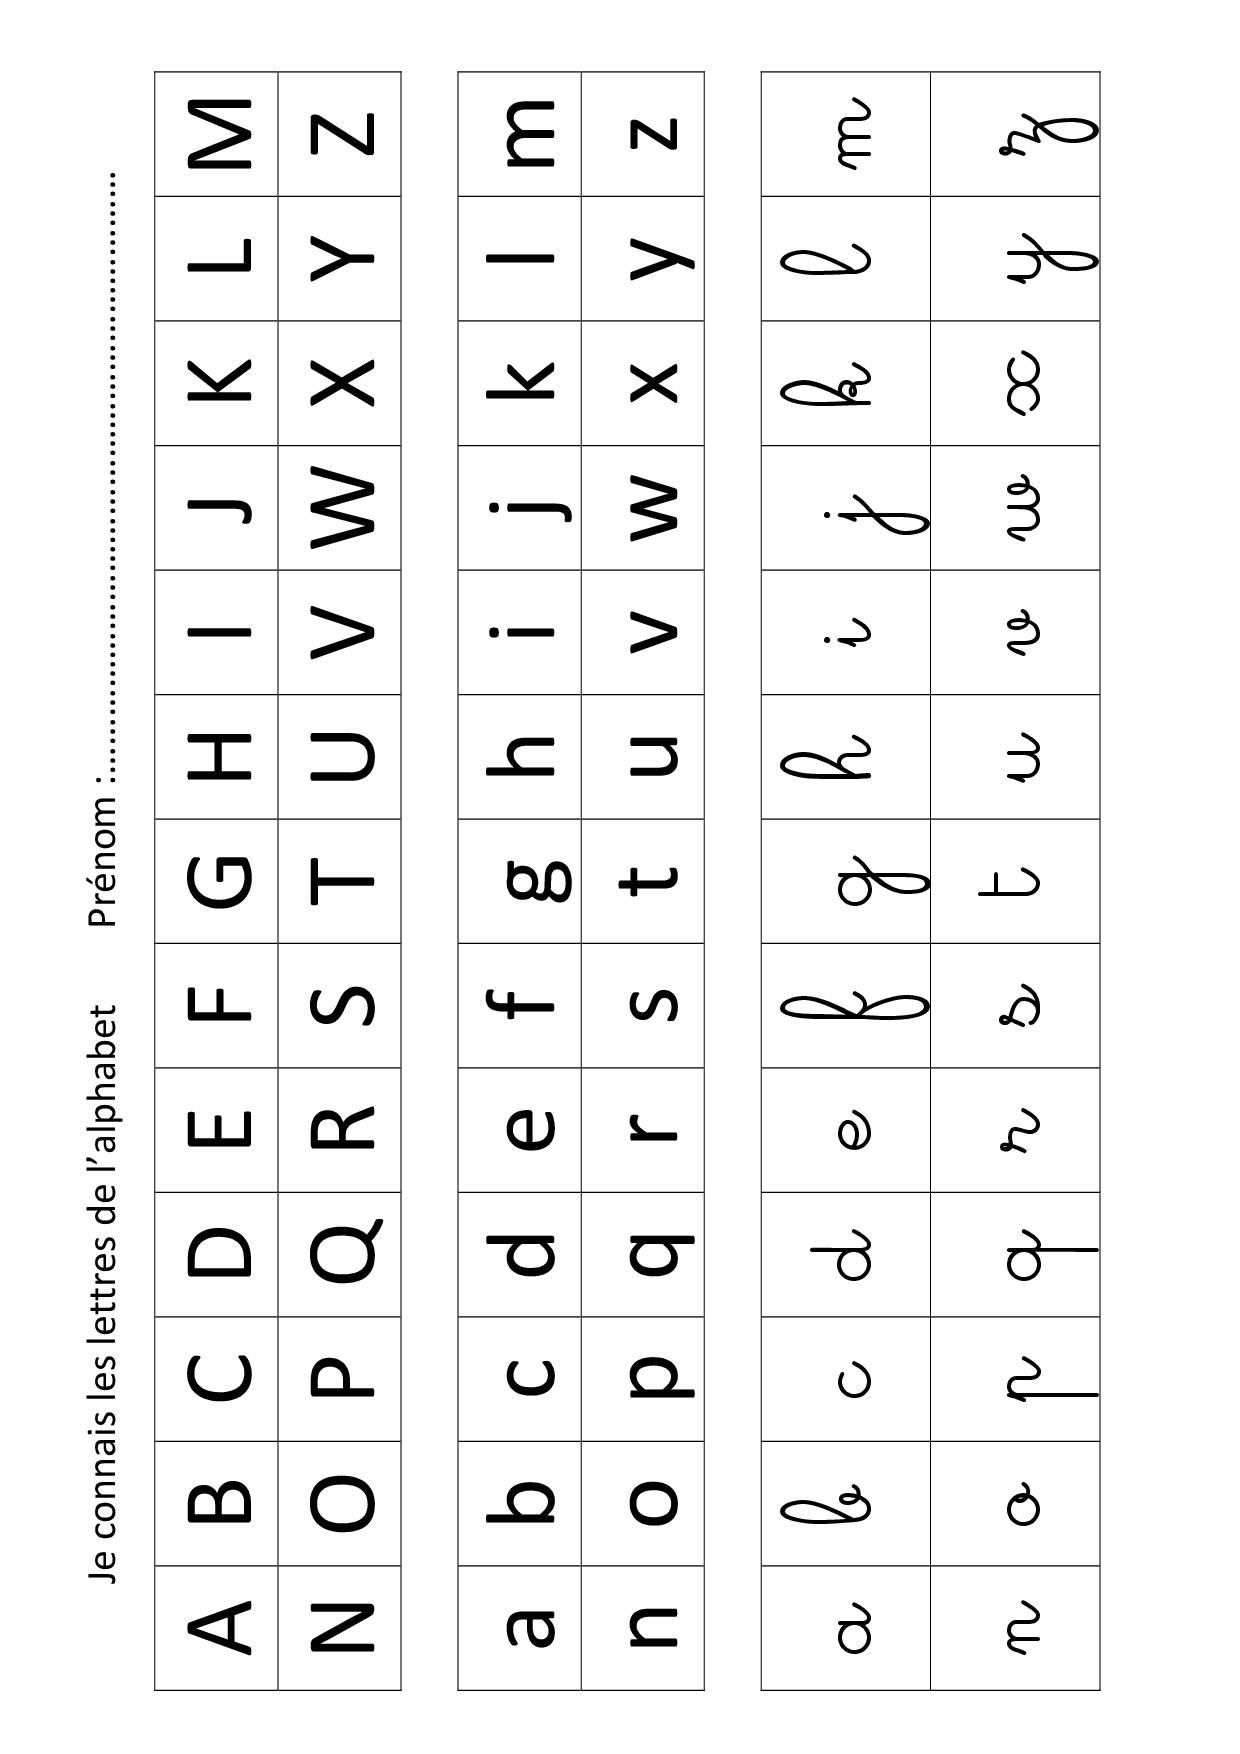 Apprendre Les Lettres De L'alphabet Avec Leap Frog dedans Apprendre L Alphabet En Francais Maternelle